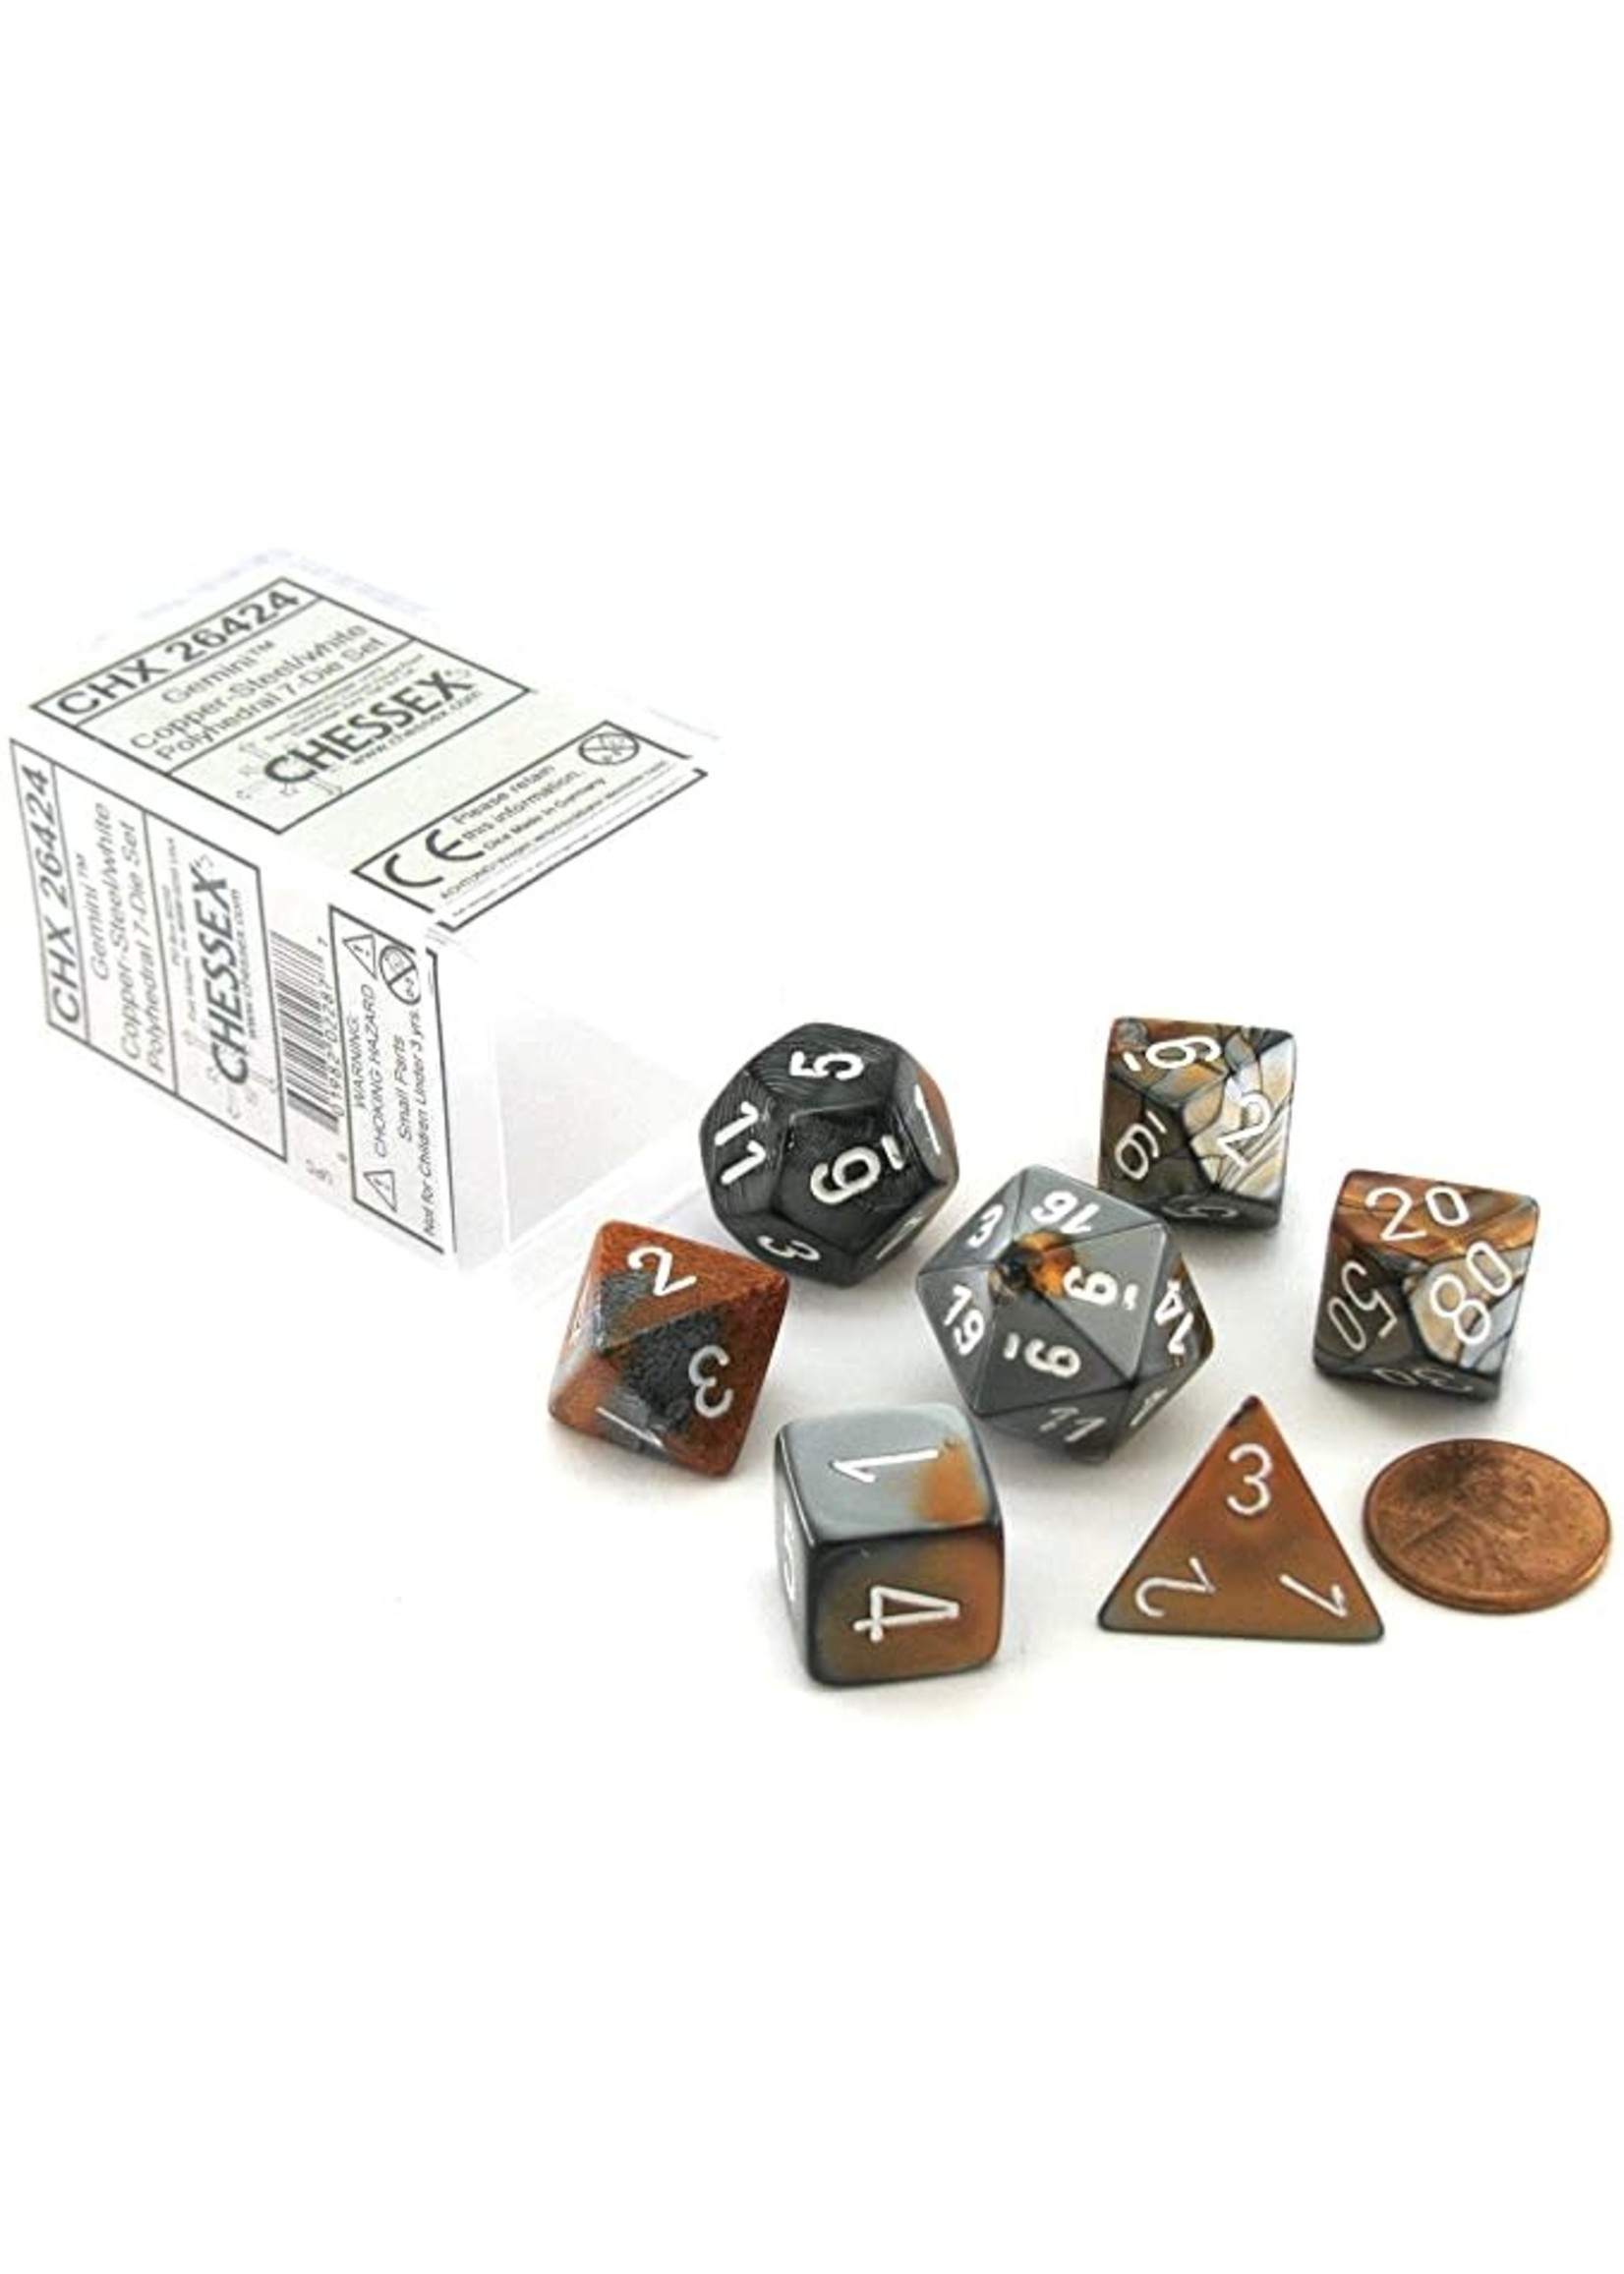 Chessex Gemini Poly 7 set: Copper & Steel w/ White